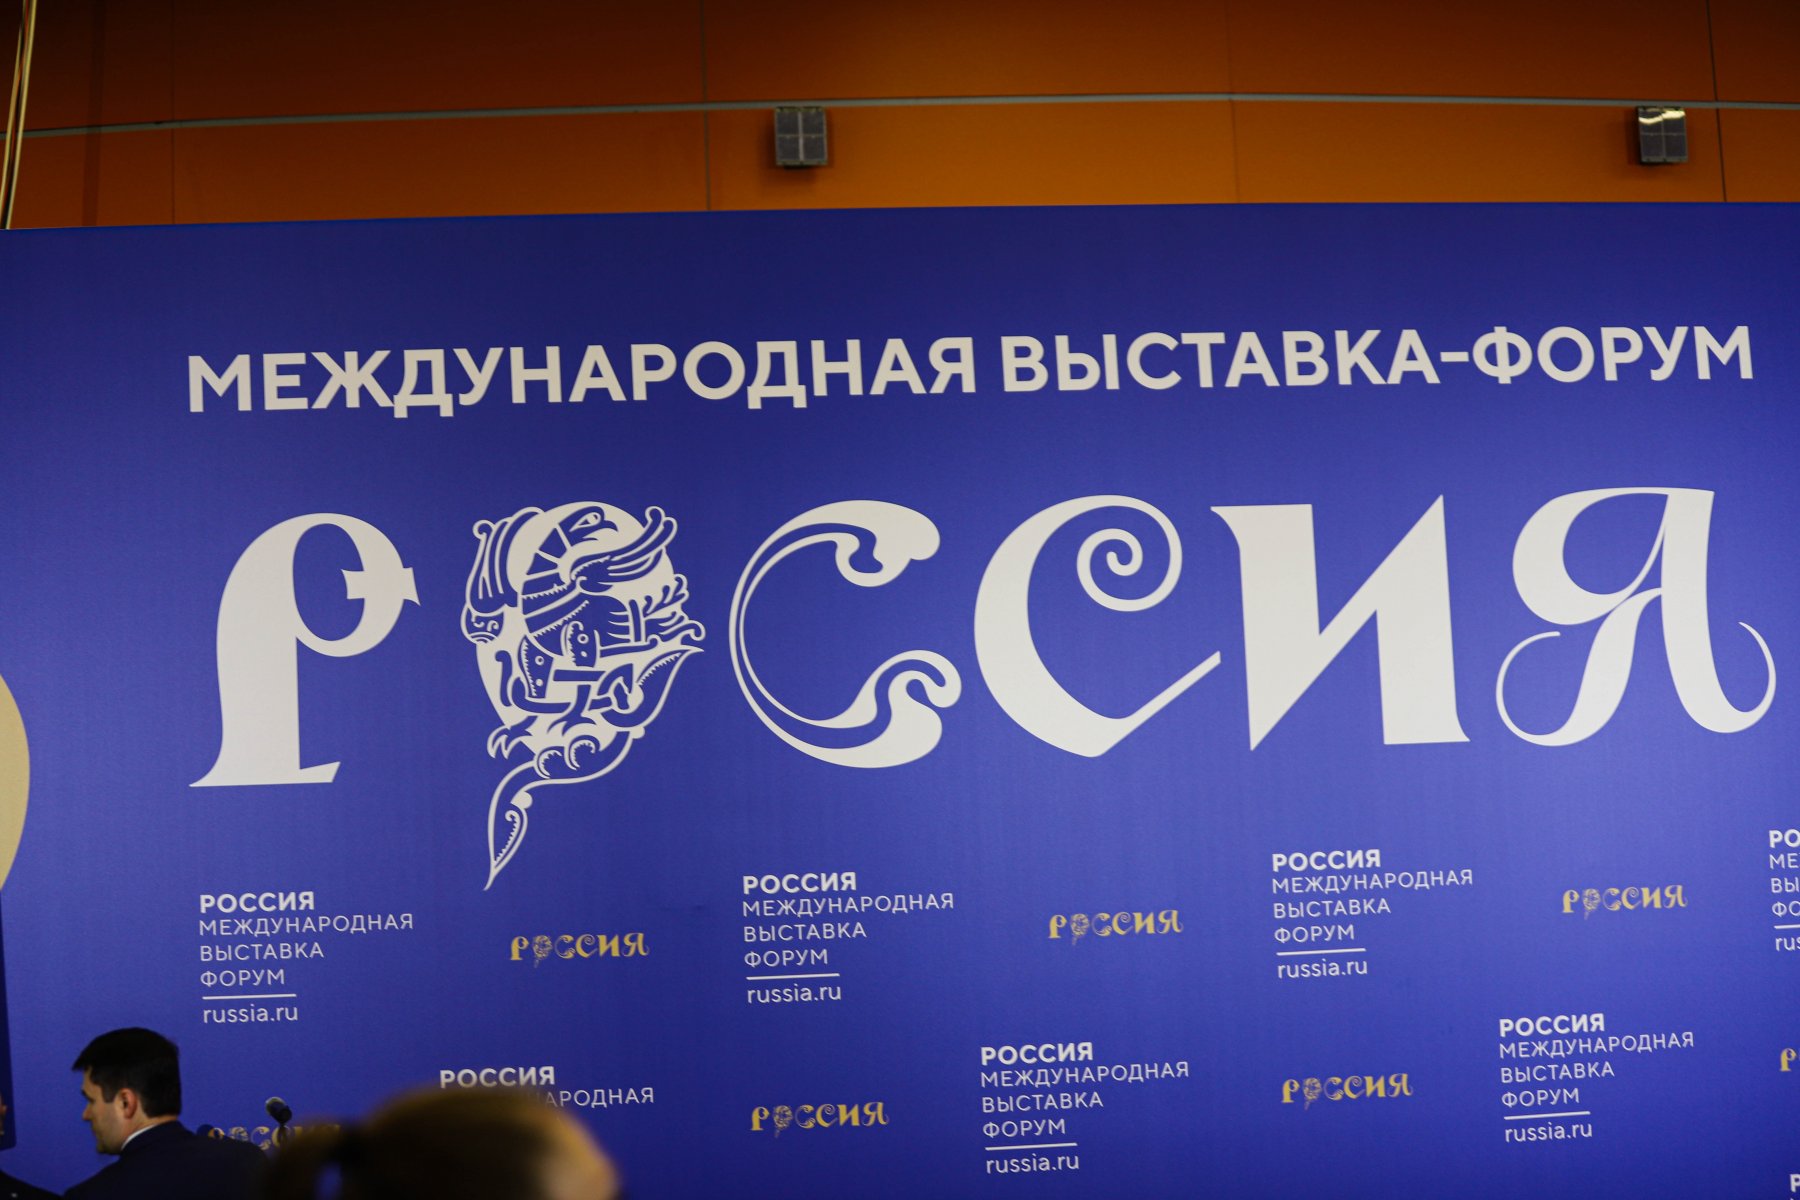 Десятимиллионный гость посетил выставку «Россия»